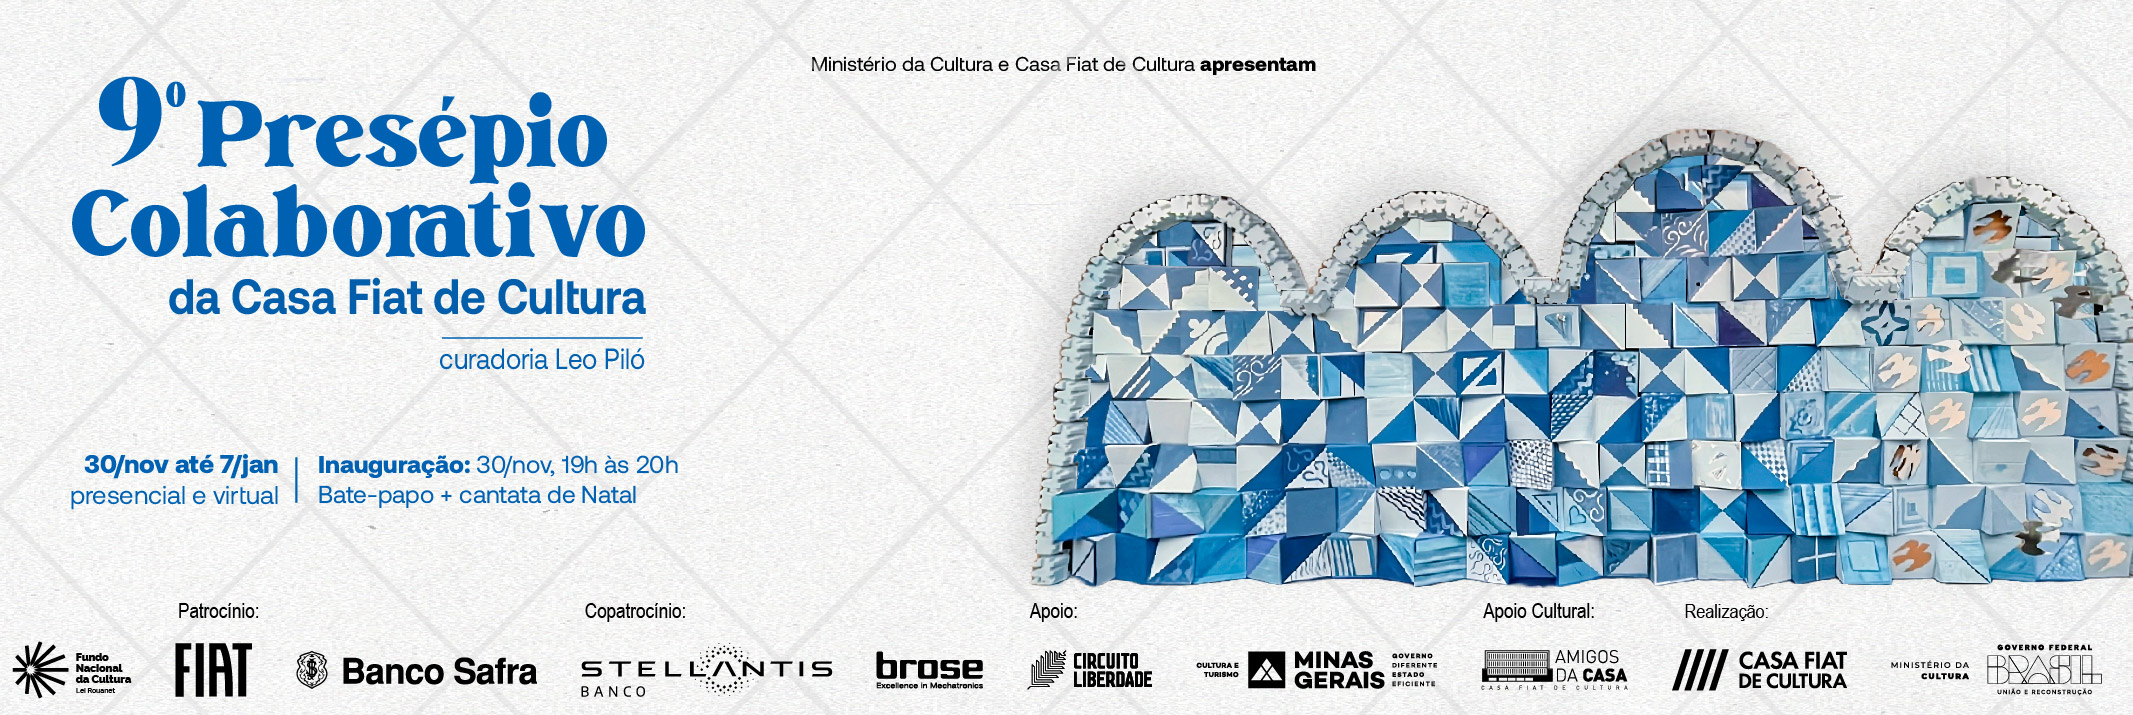 O Presépio da Exposição Arte Brasileira: a coleção do MAP na Casa Fiat de Cultura